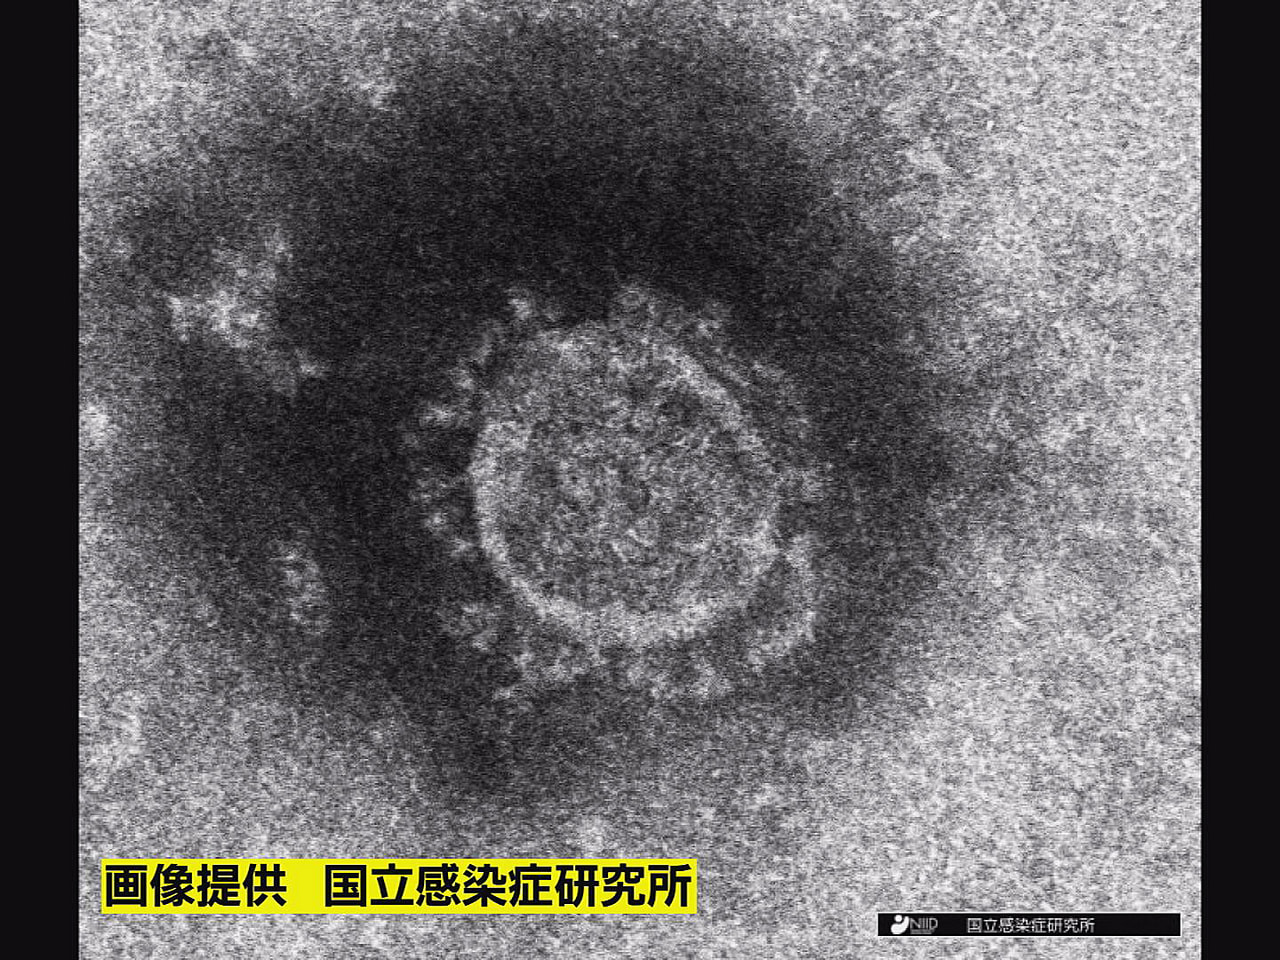 岐阜県は２３日、新型コロナウイルスの感染者が新たに２１１０人確認されたと発表しま...